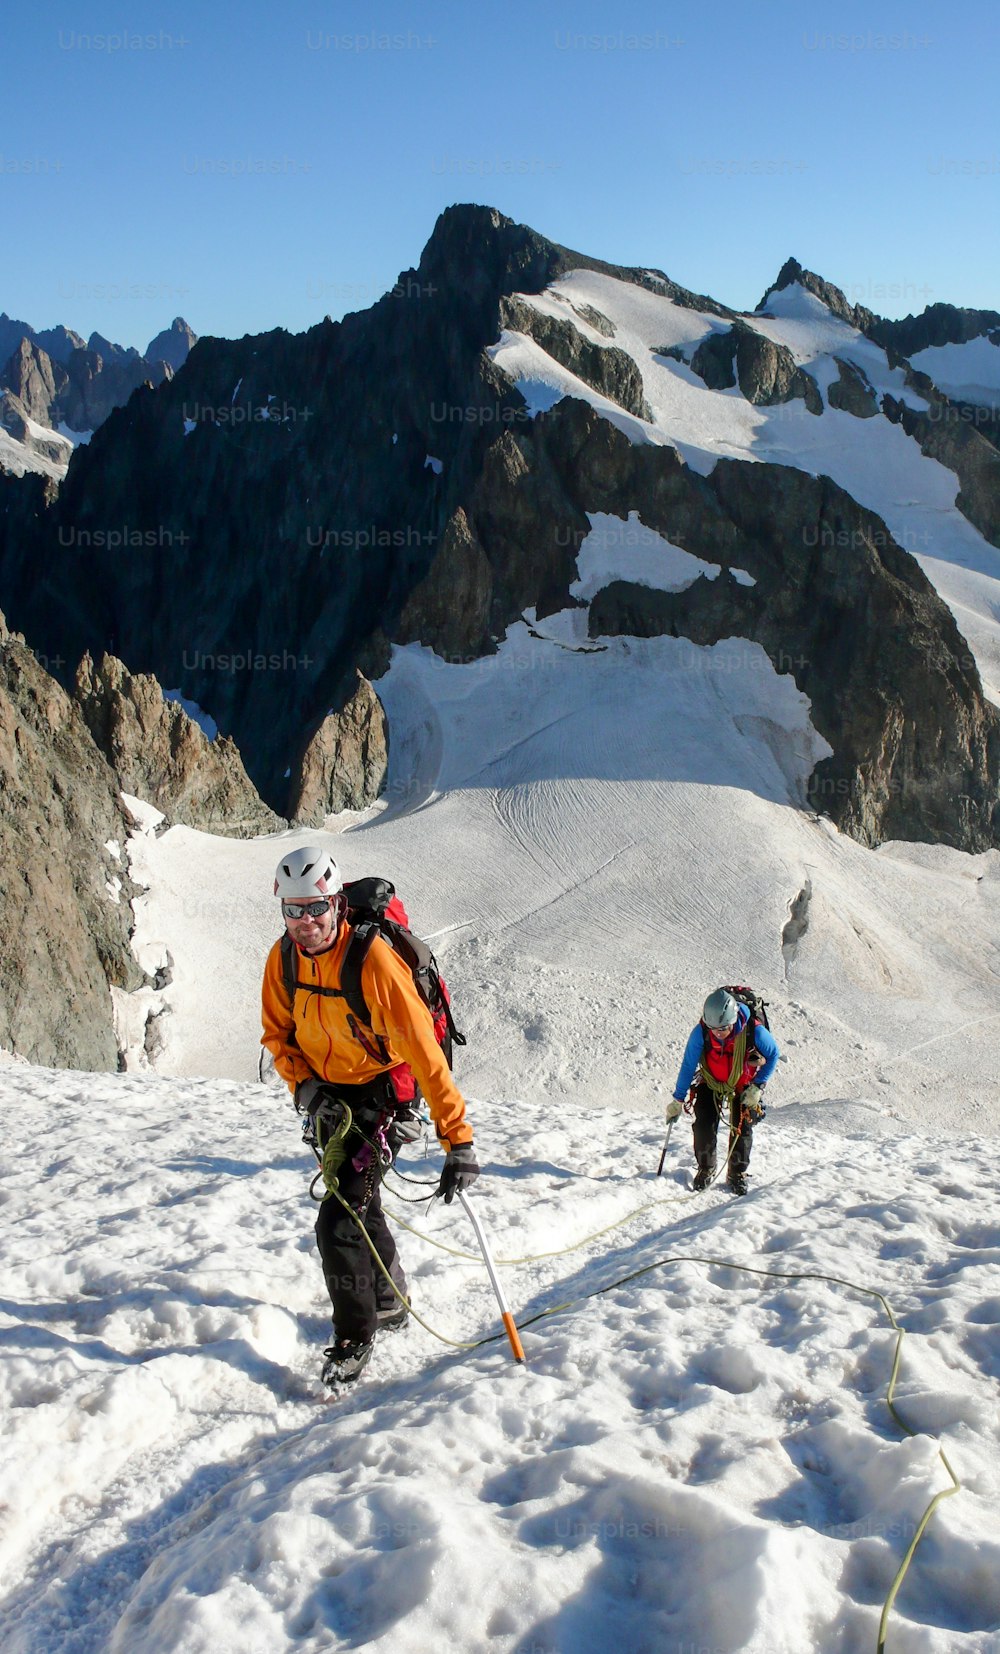 Bergführer und Kunde auf dem Gletscher zu einem hochalpinen Gipfel an einem schönen Sommermorgen in den französischen Alpen